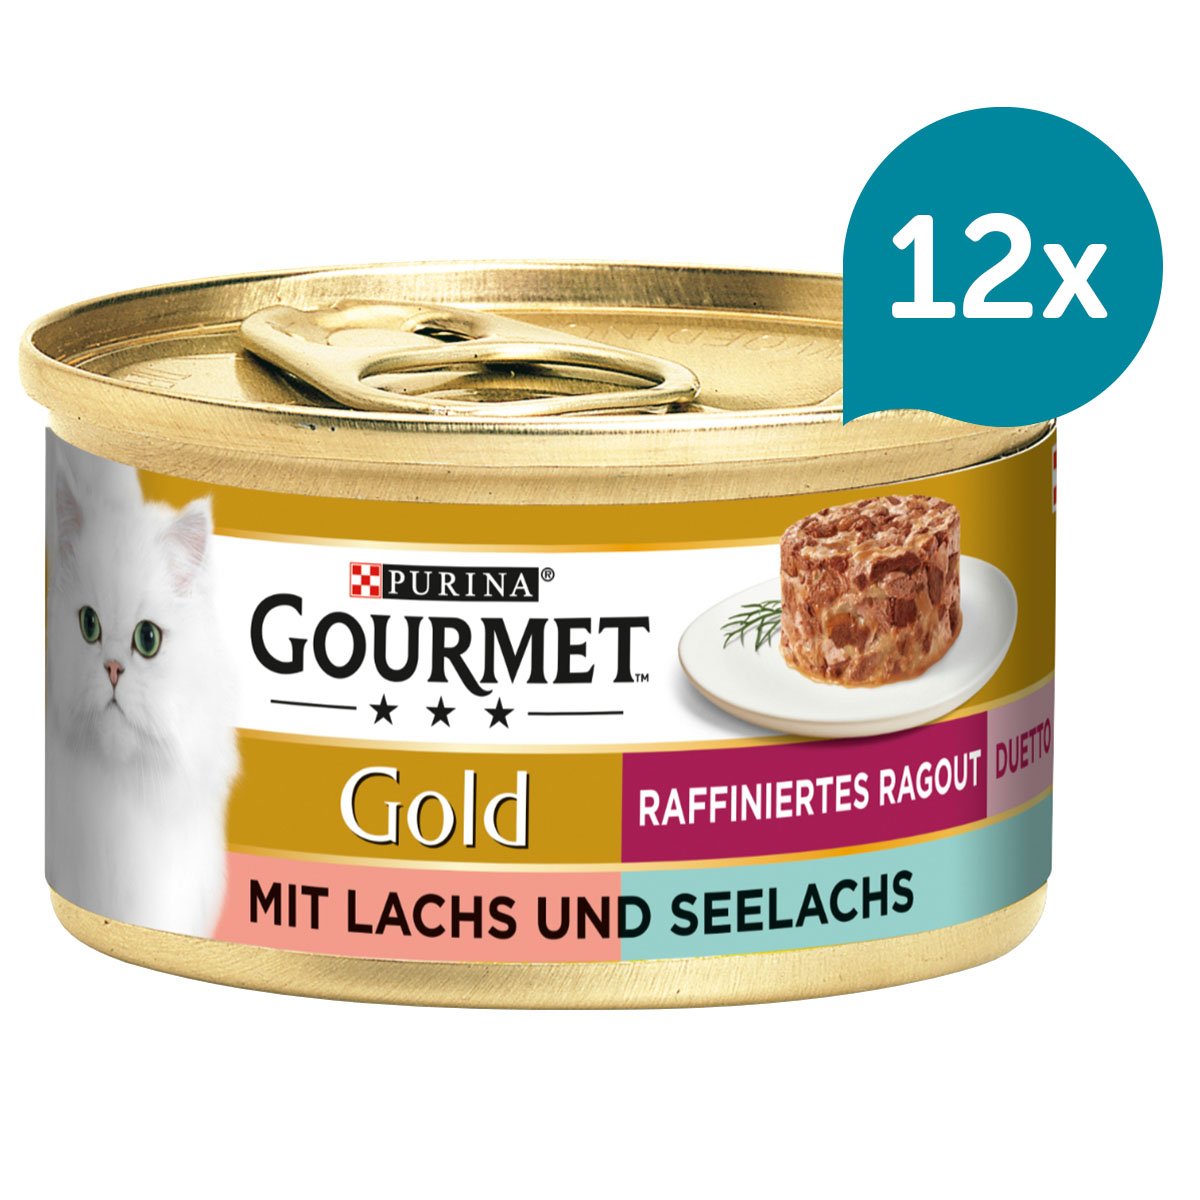 GOURMET Gold Raffiniertes Ragout Duetto mit Lachs und Seelachs 12x85g